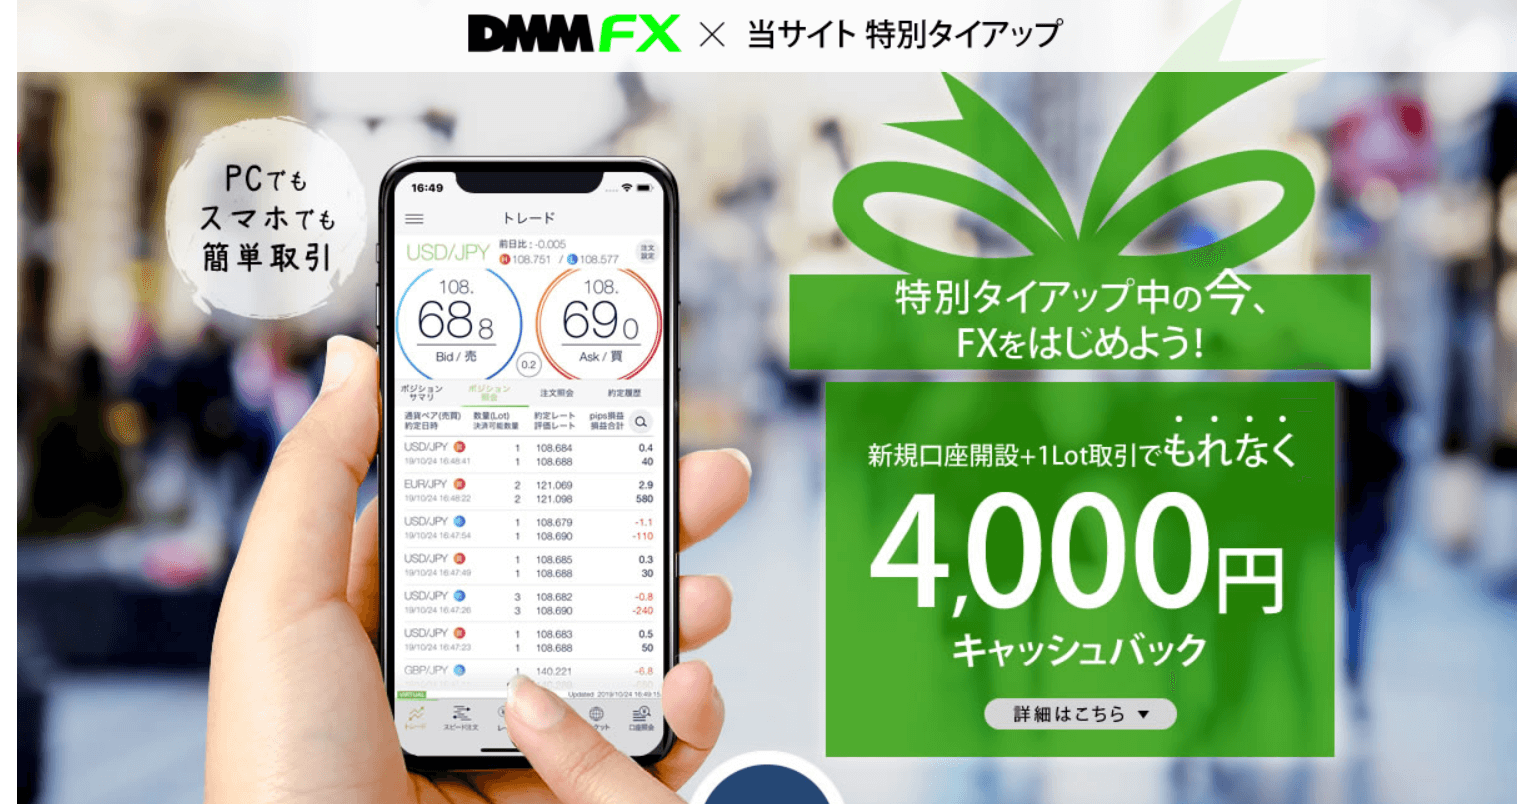 DMM FXは限定タイアップで最大2万4000円キャッシュバックに！